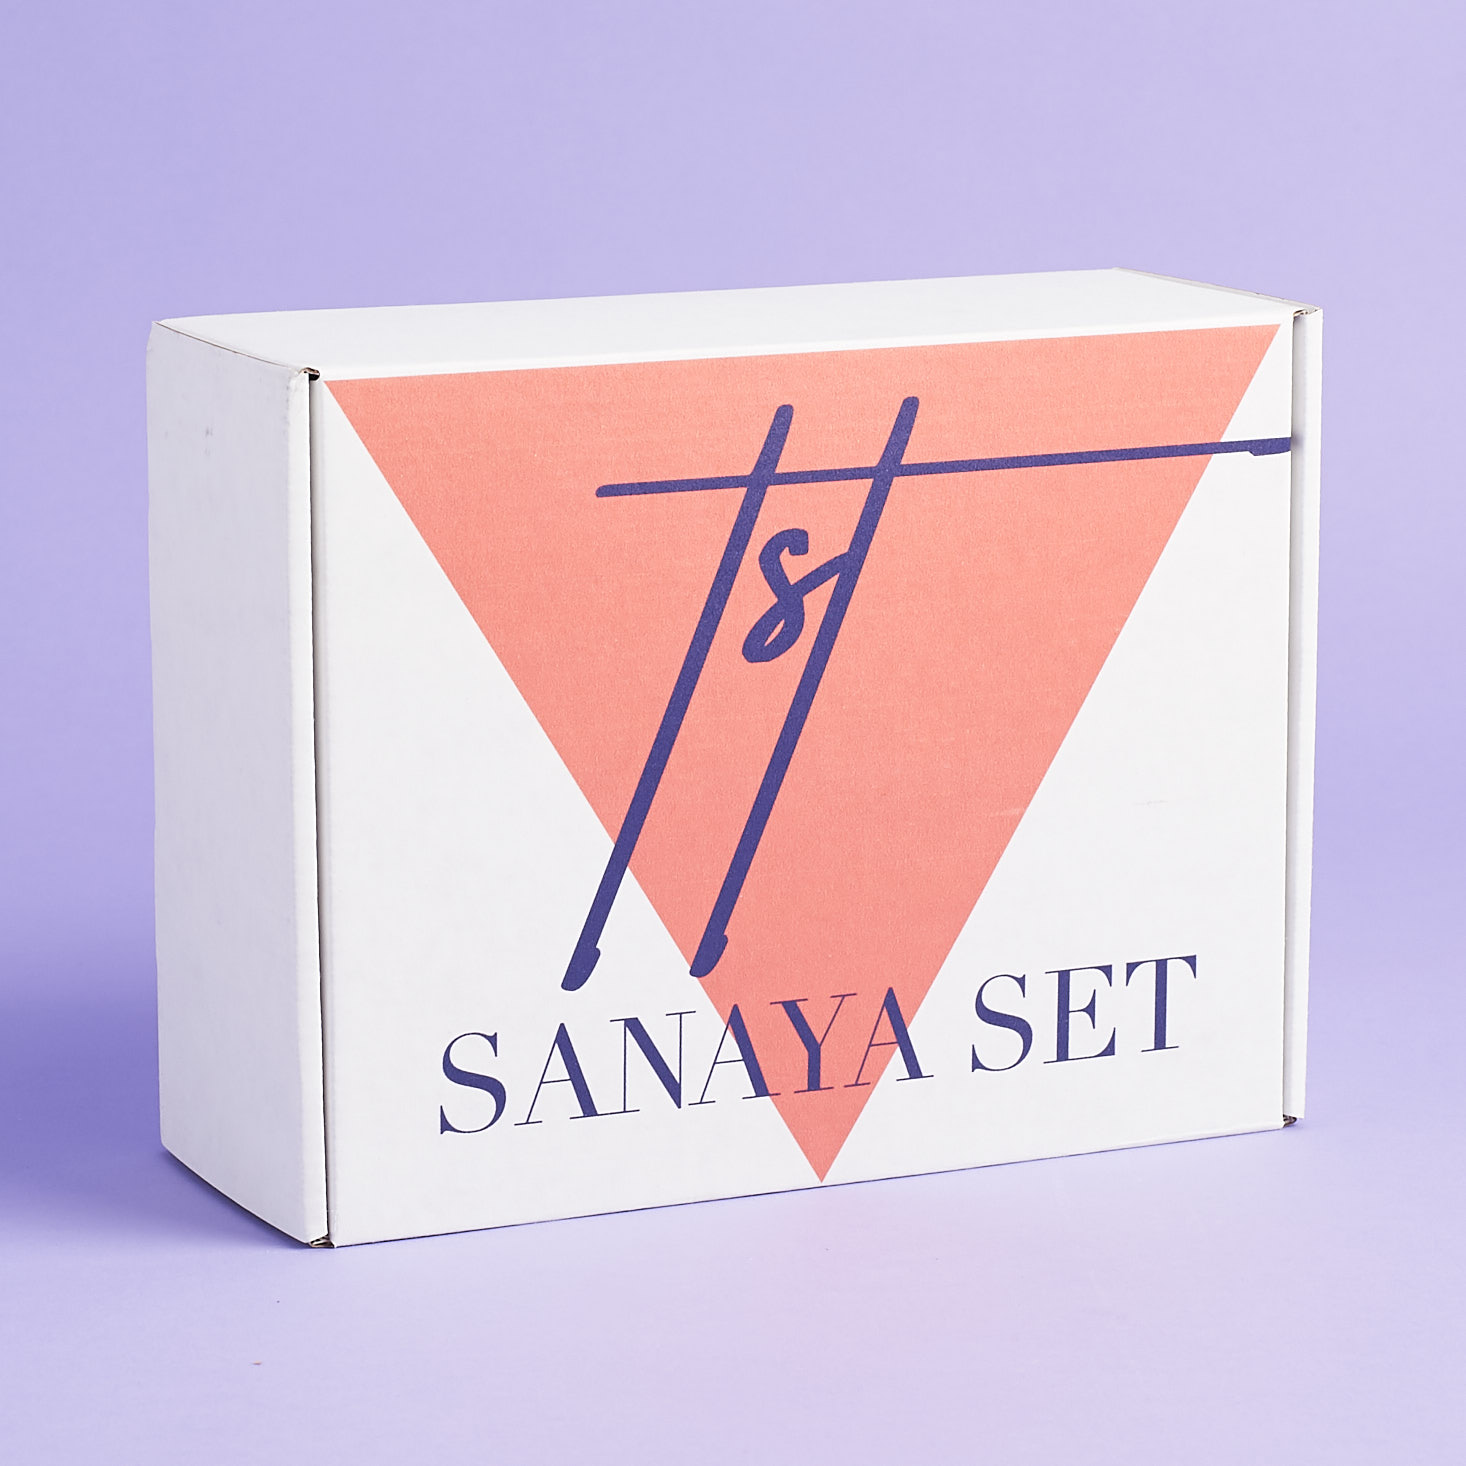 Sanaya Set Subscription Box Review – Summer 2018